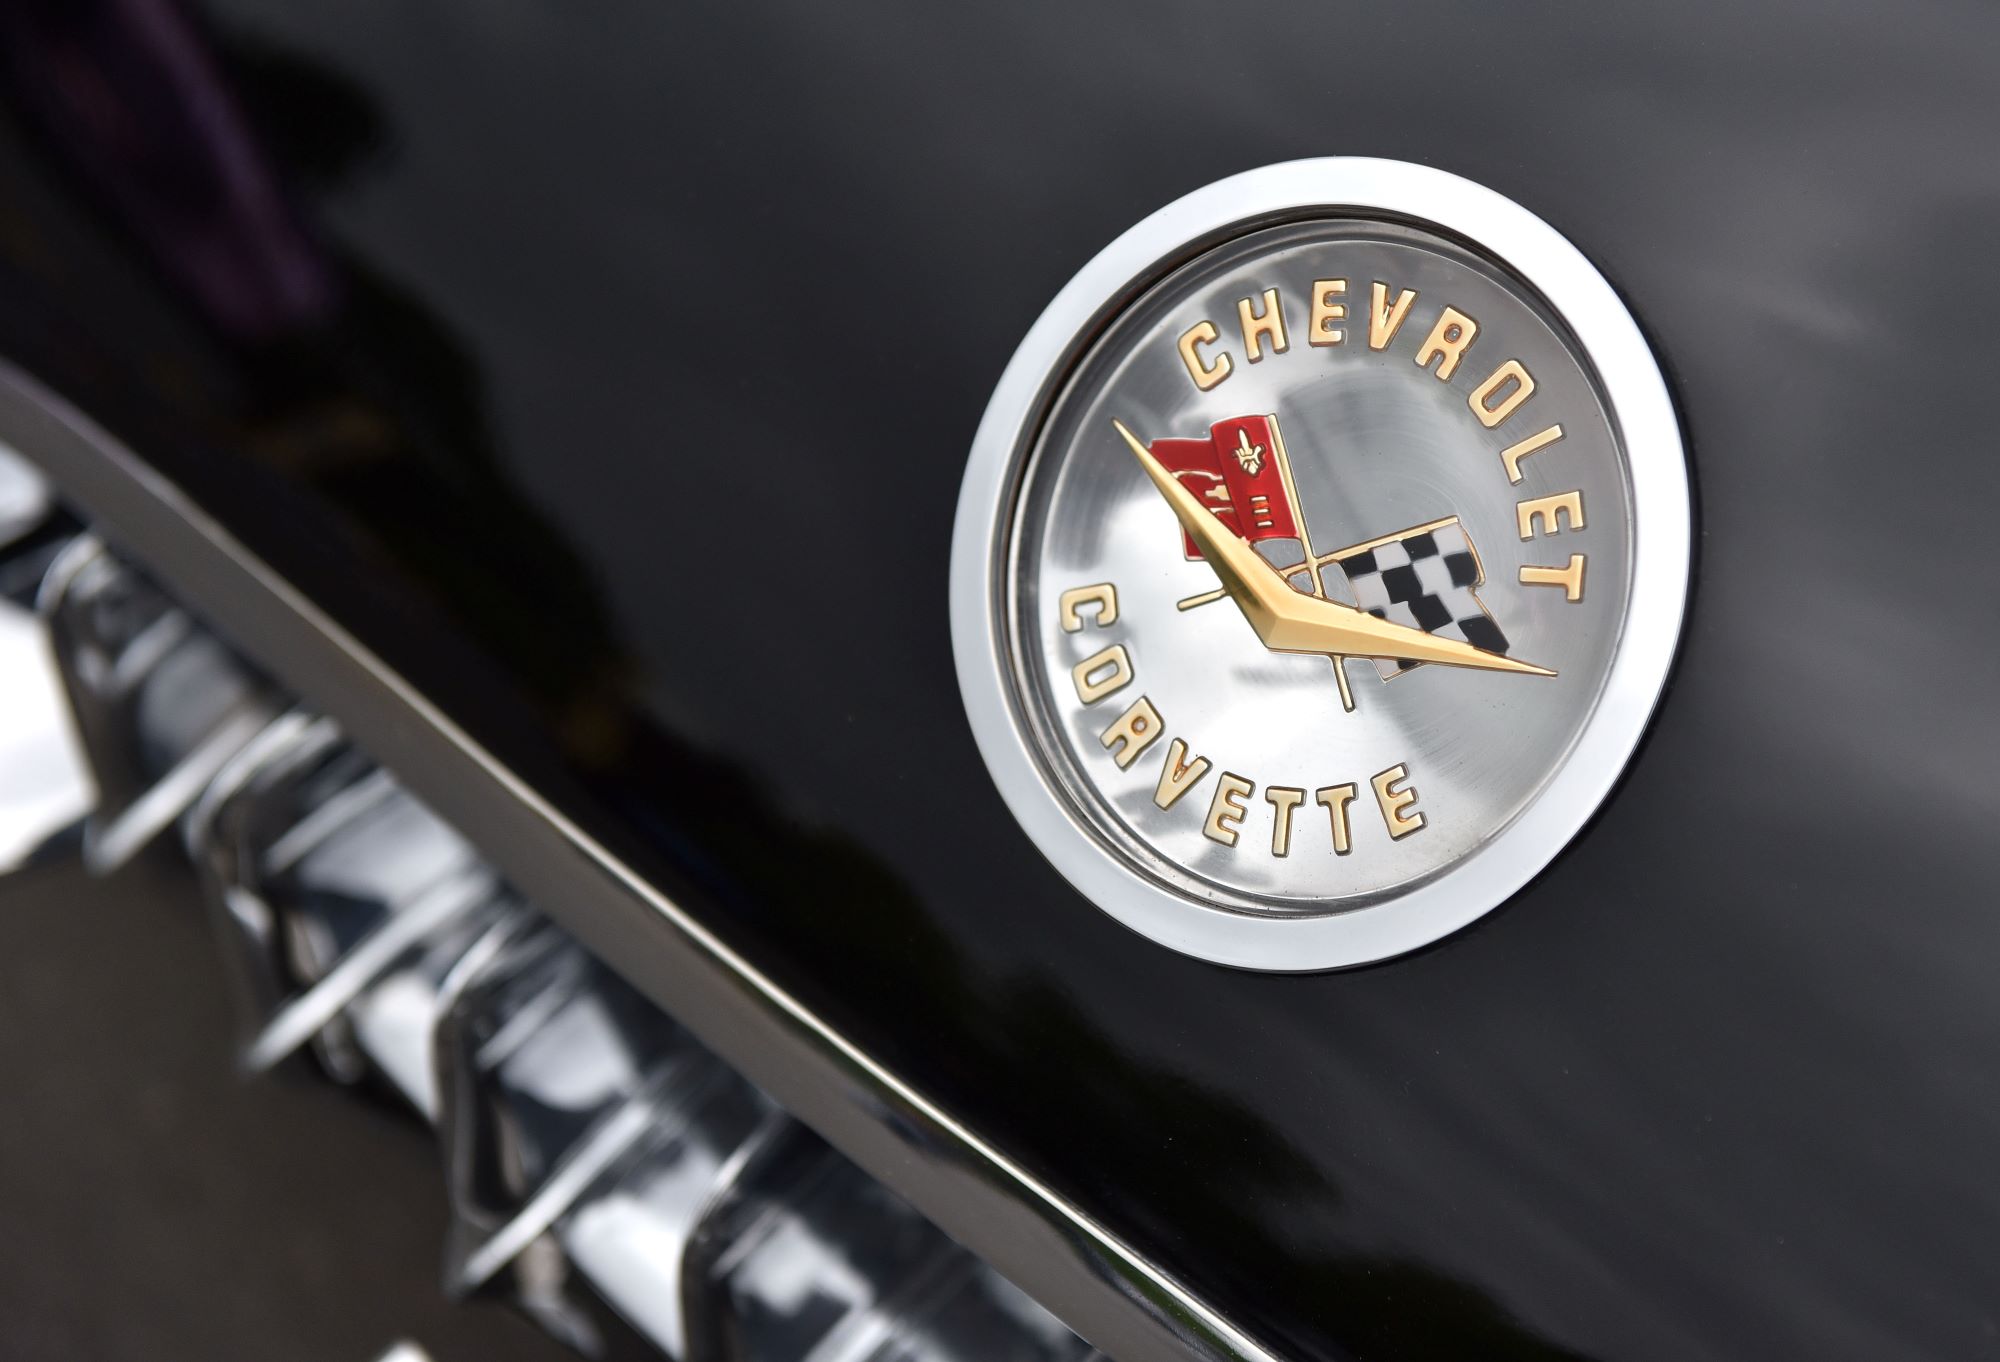 Chevrolet Corvette logo on a black car.